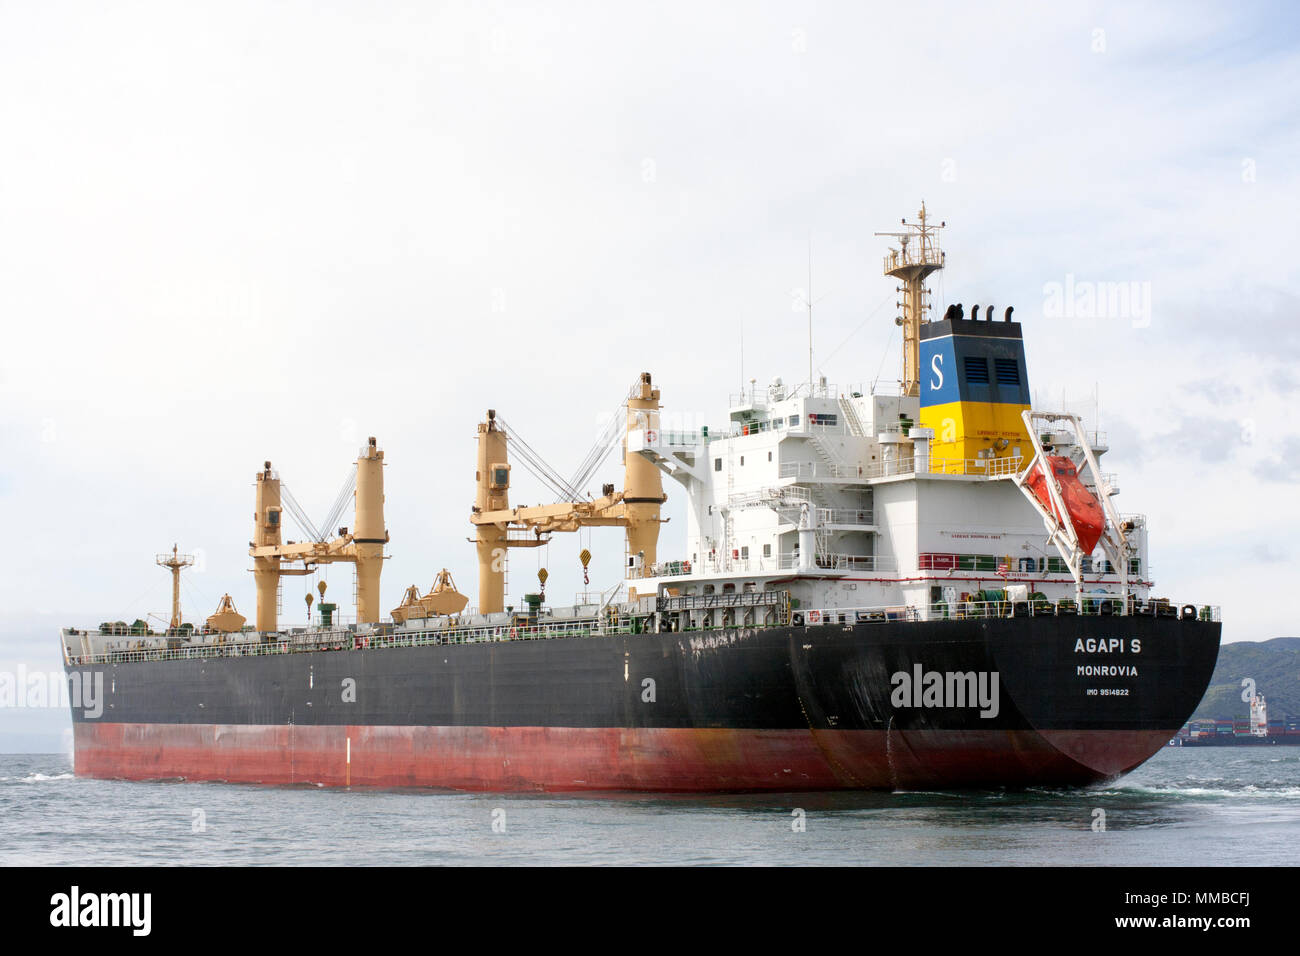 Agapi S Bulk Carrier Schiff Stockfoto